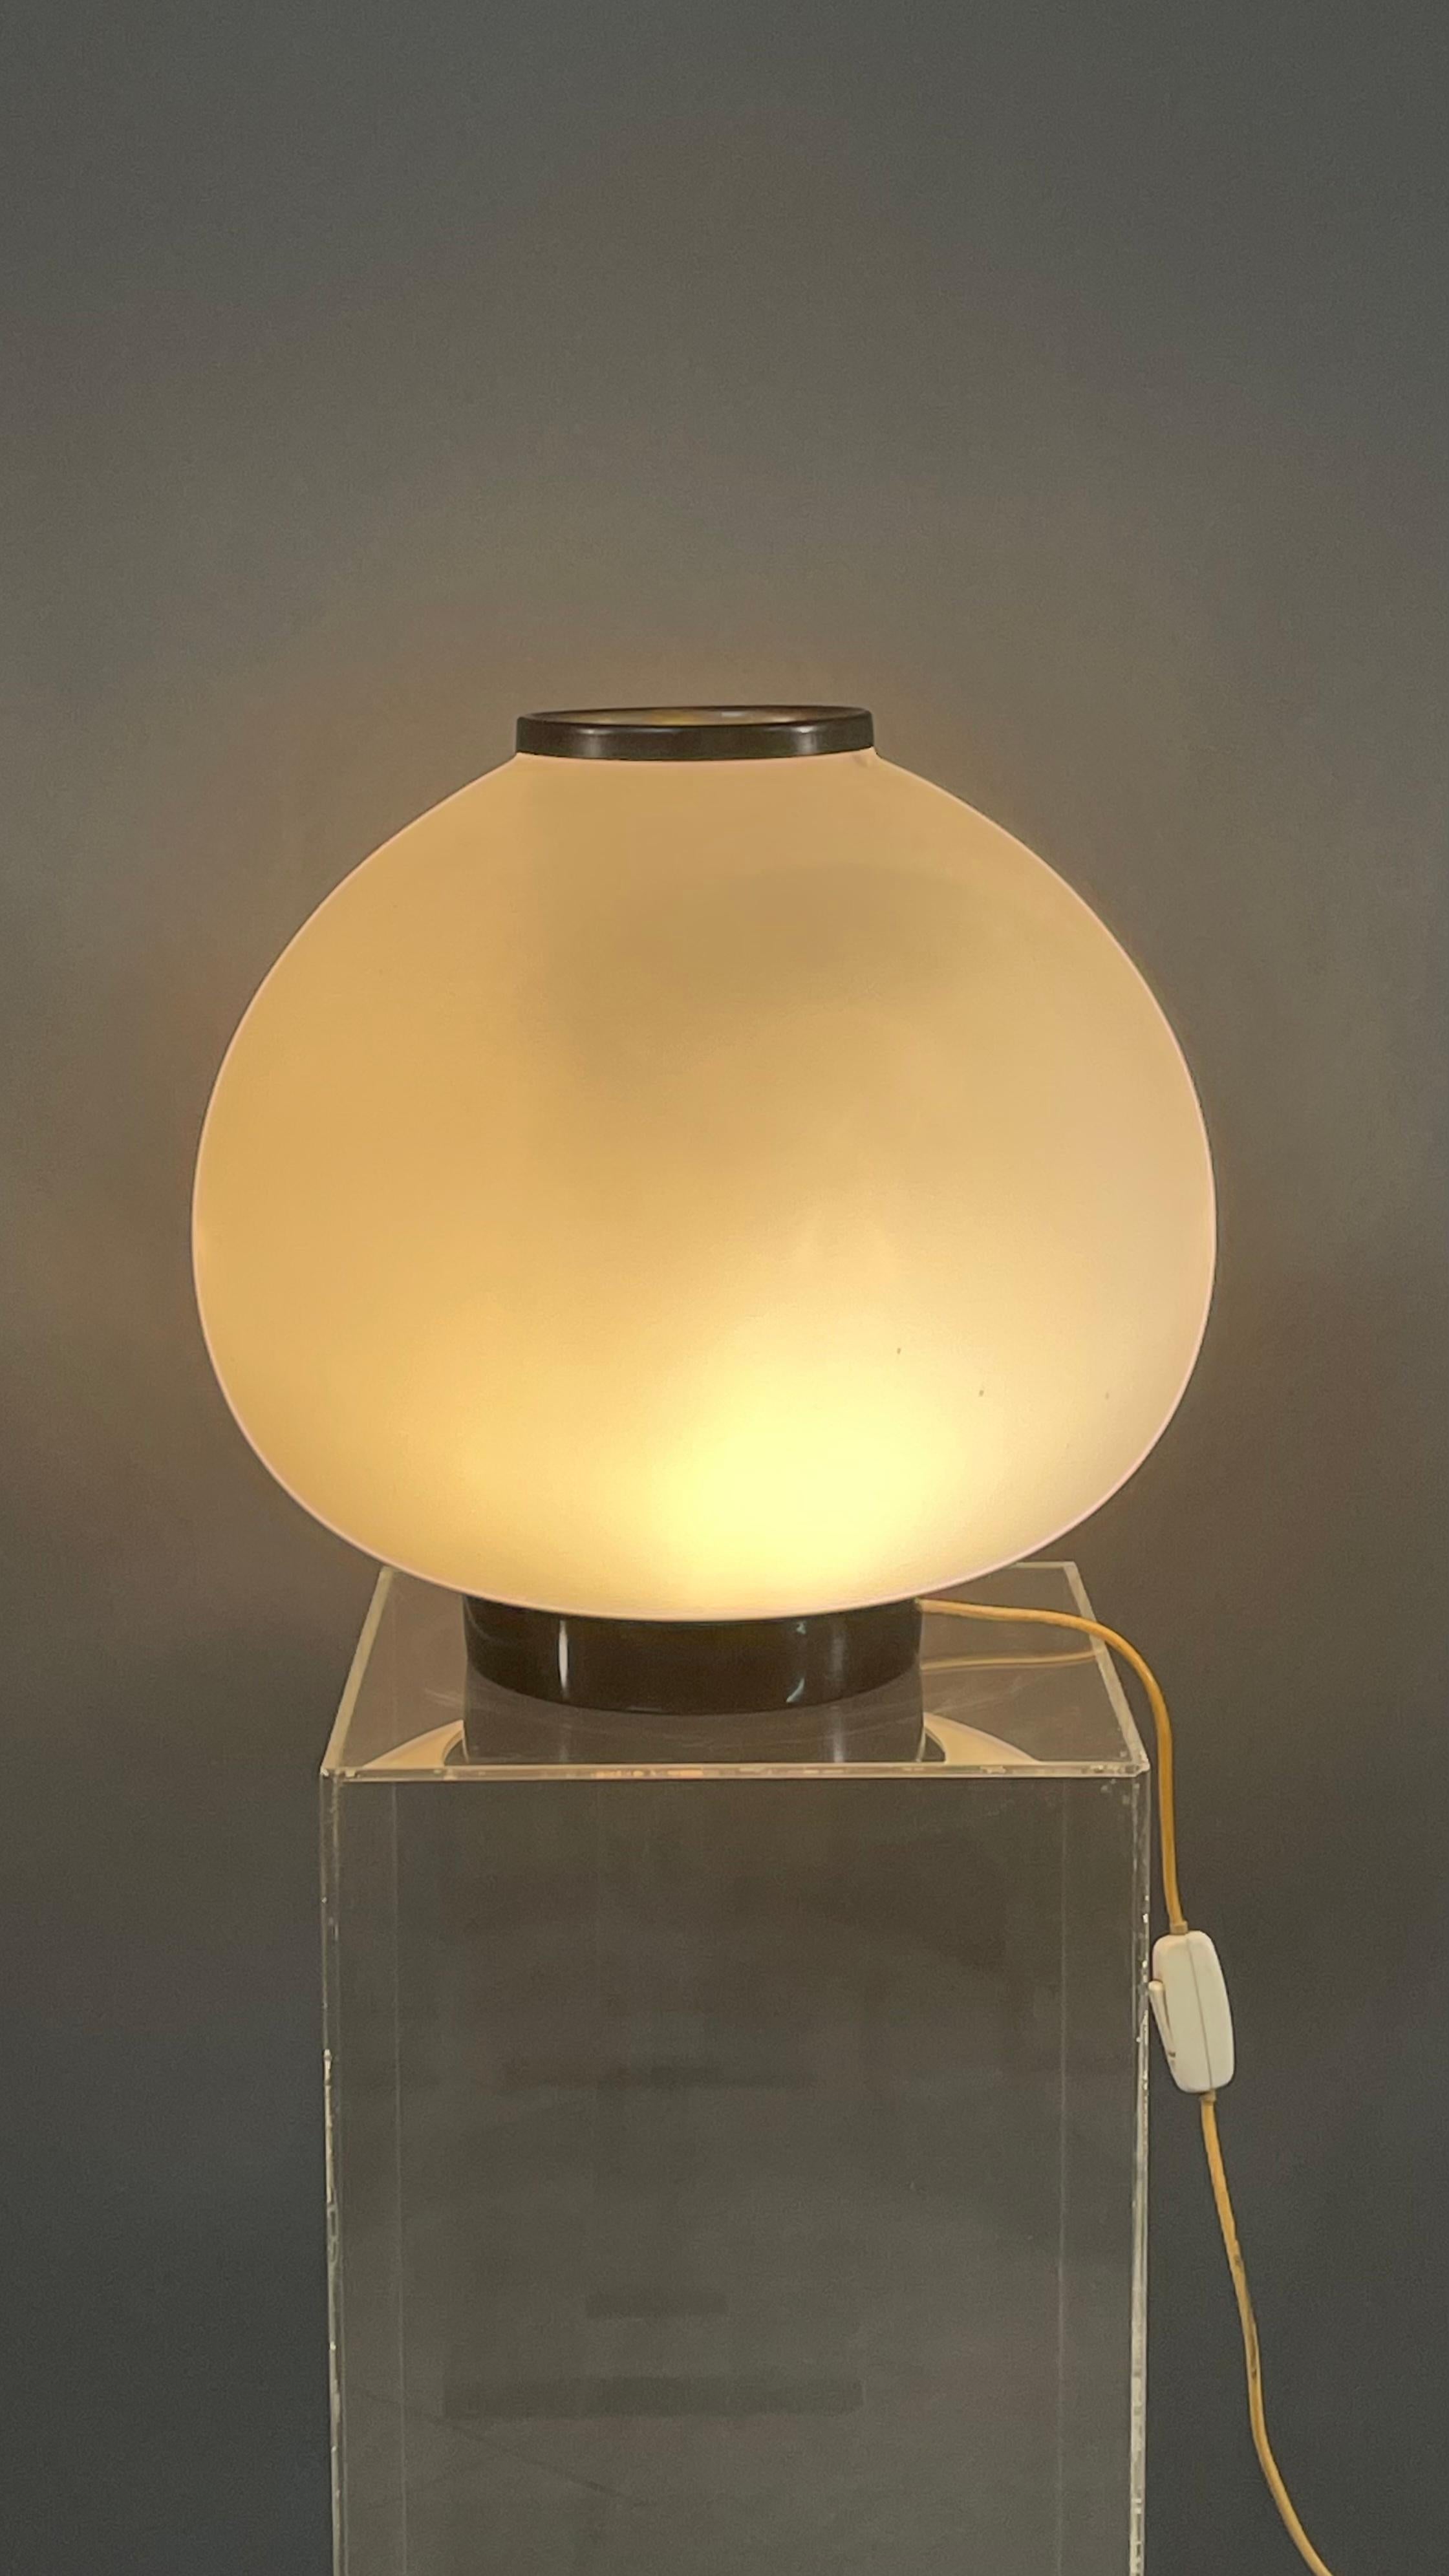 Wichtige und sehr seltene Opalglas-Tischlampe von Stilnovo aus den 1960er Jahren.
Unterschrieben auf der Steckdose.
Details aus Messing 
Die sehr elegante Form und das raffinierte Design machen diese Opalglaslampe zu einem kleinen Meisterwerk und